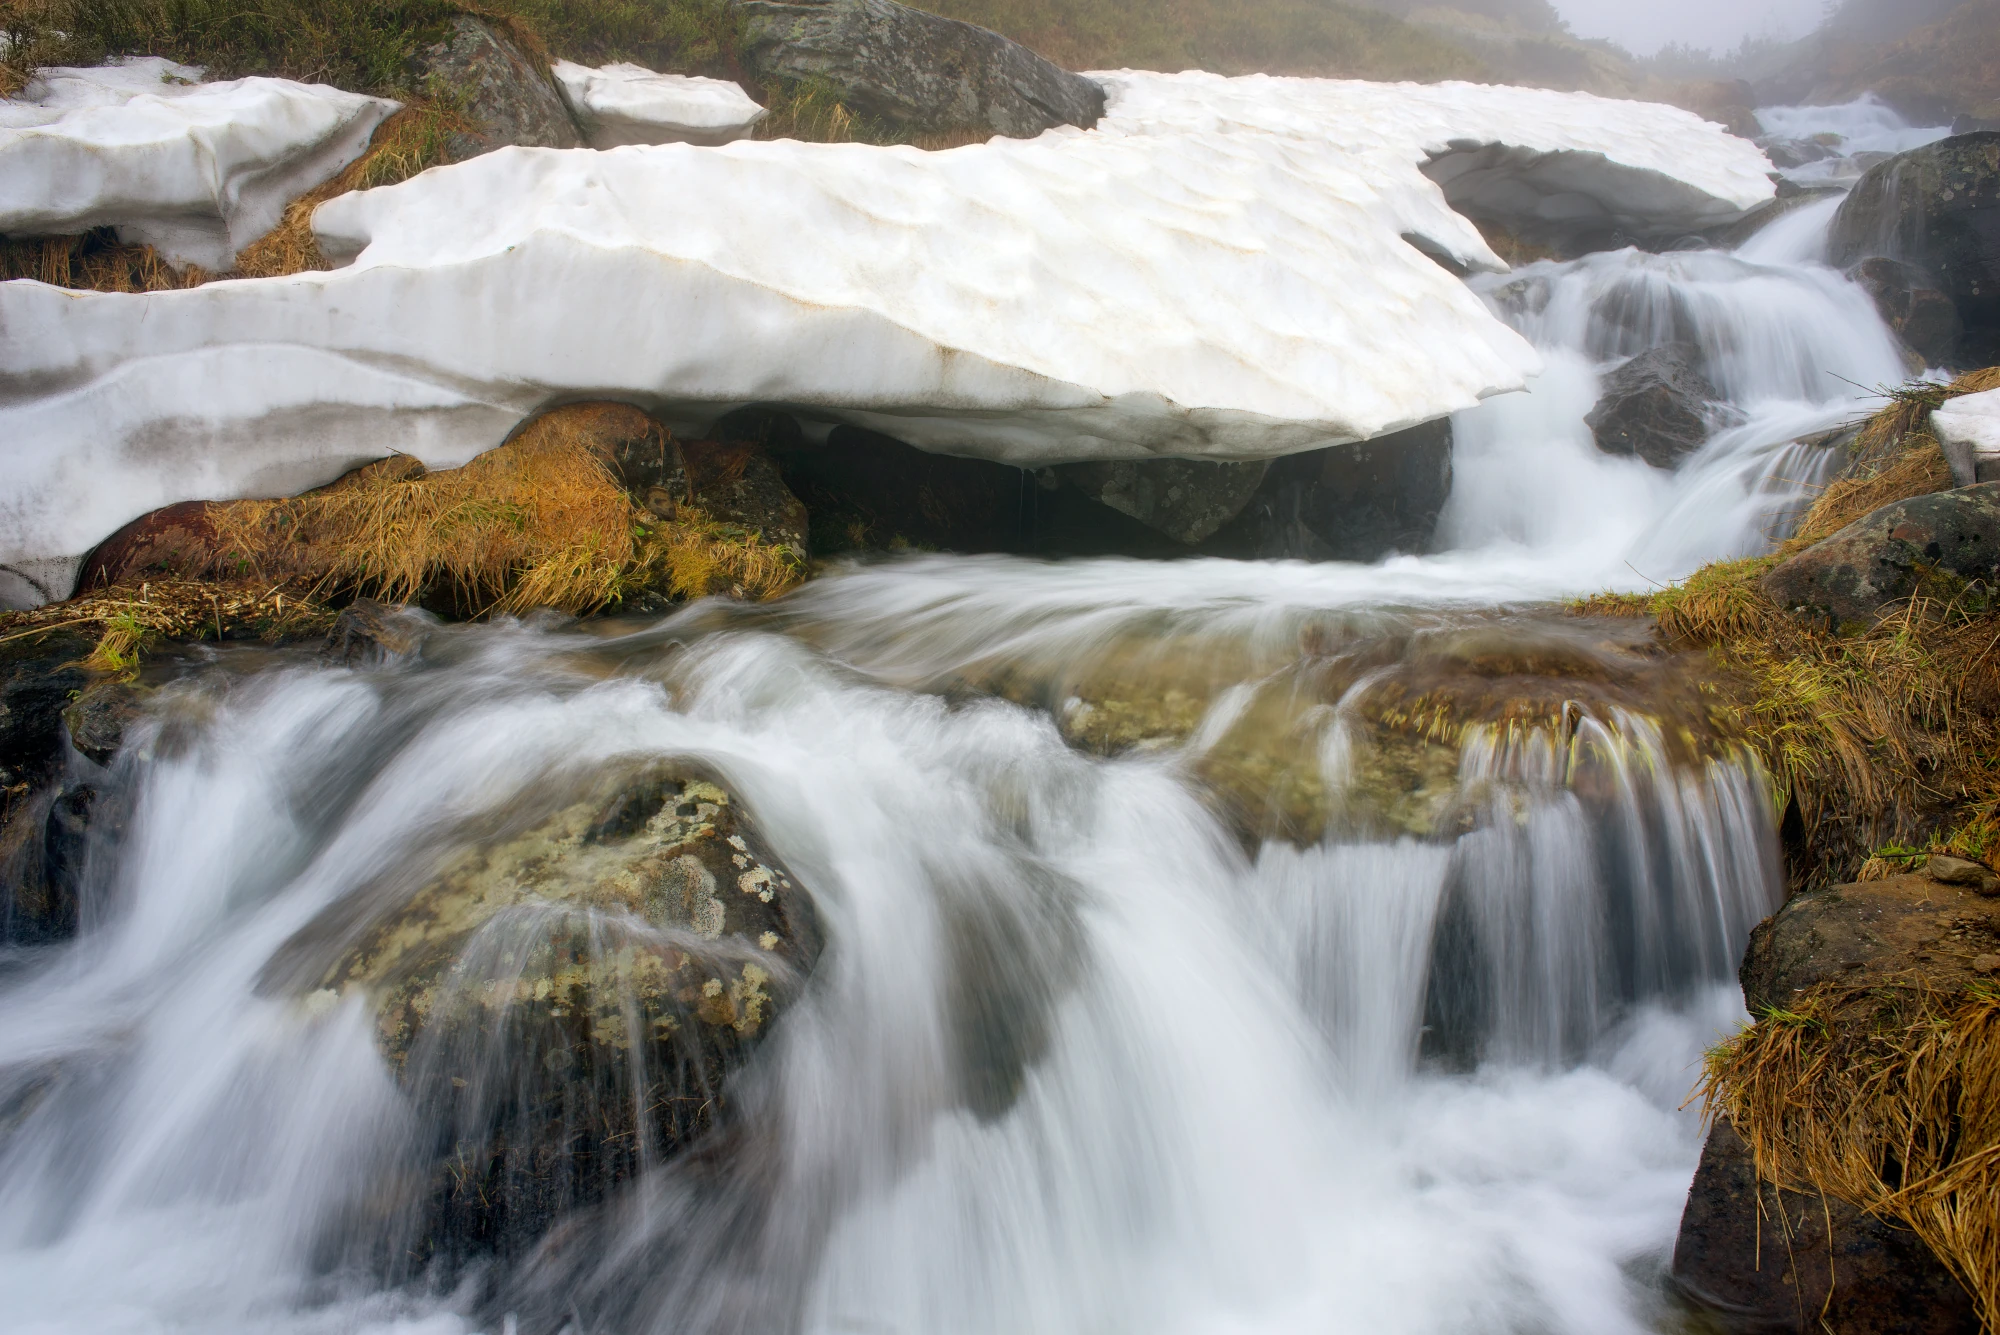 Das Bild zeigt einen reißenden Fluss, auf dem Teilweise noch Eis zu sehen ist. Das Bild ist ein Teil des Blogbeitrag über demineralisiertes Wasser.